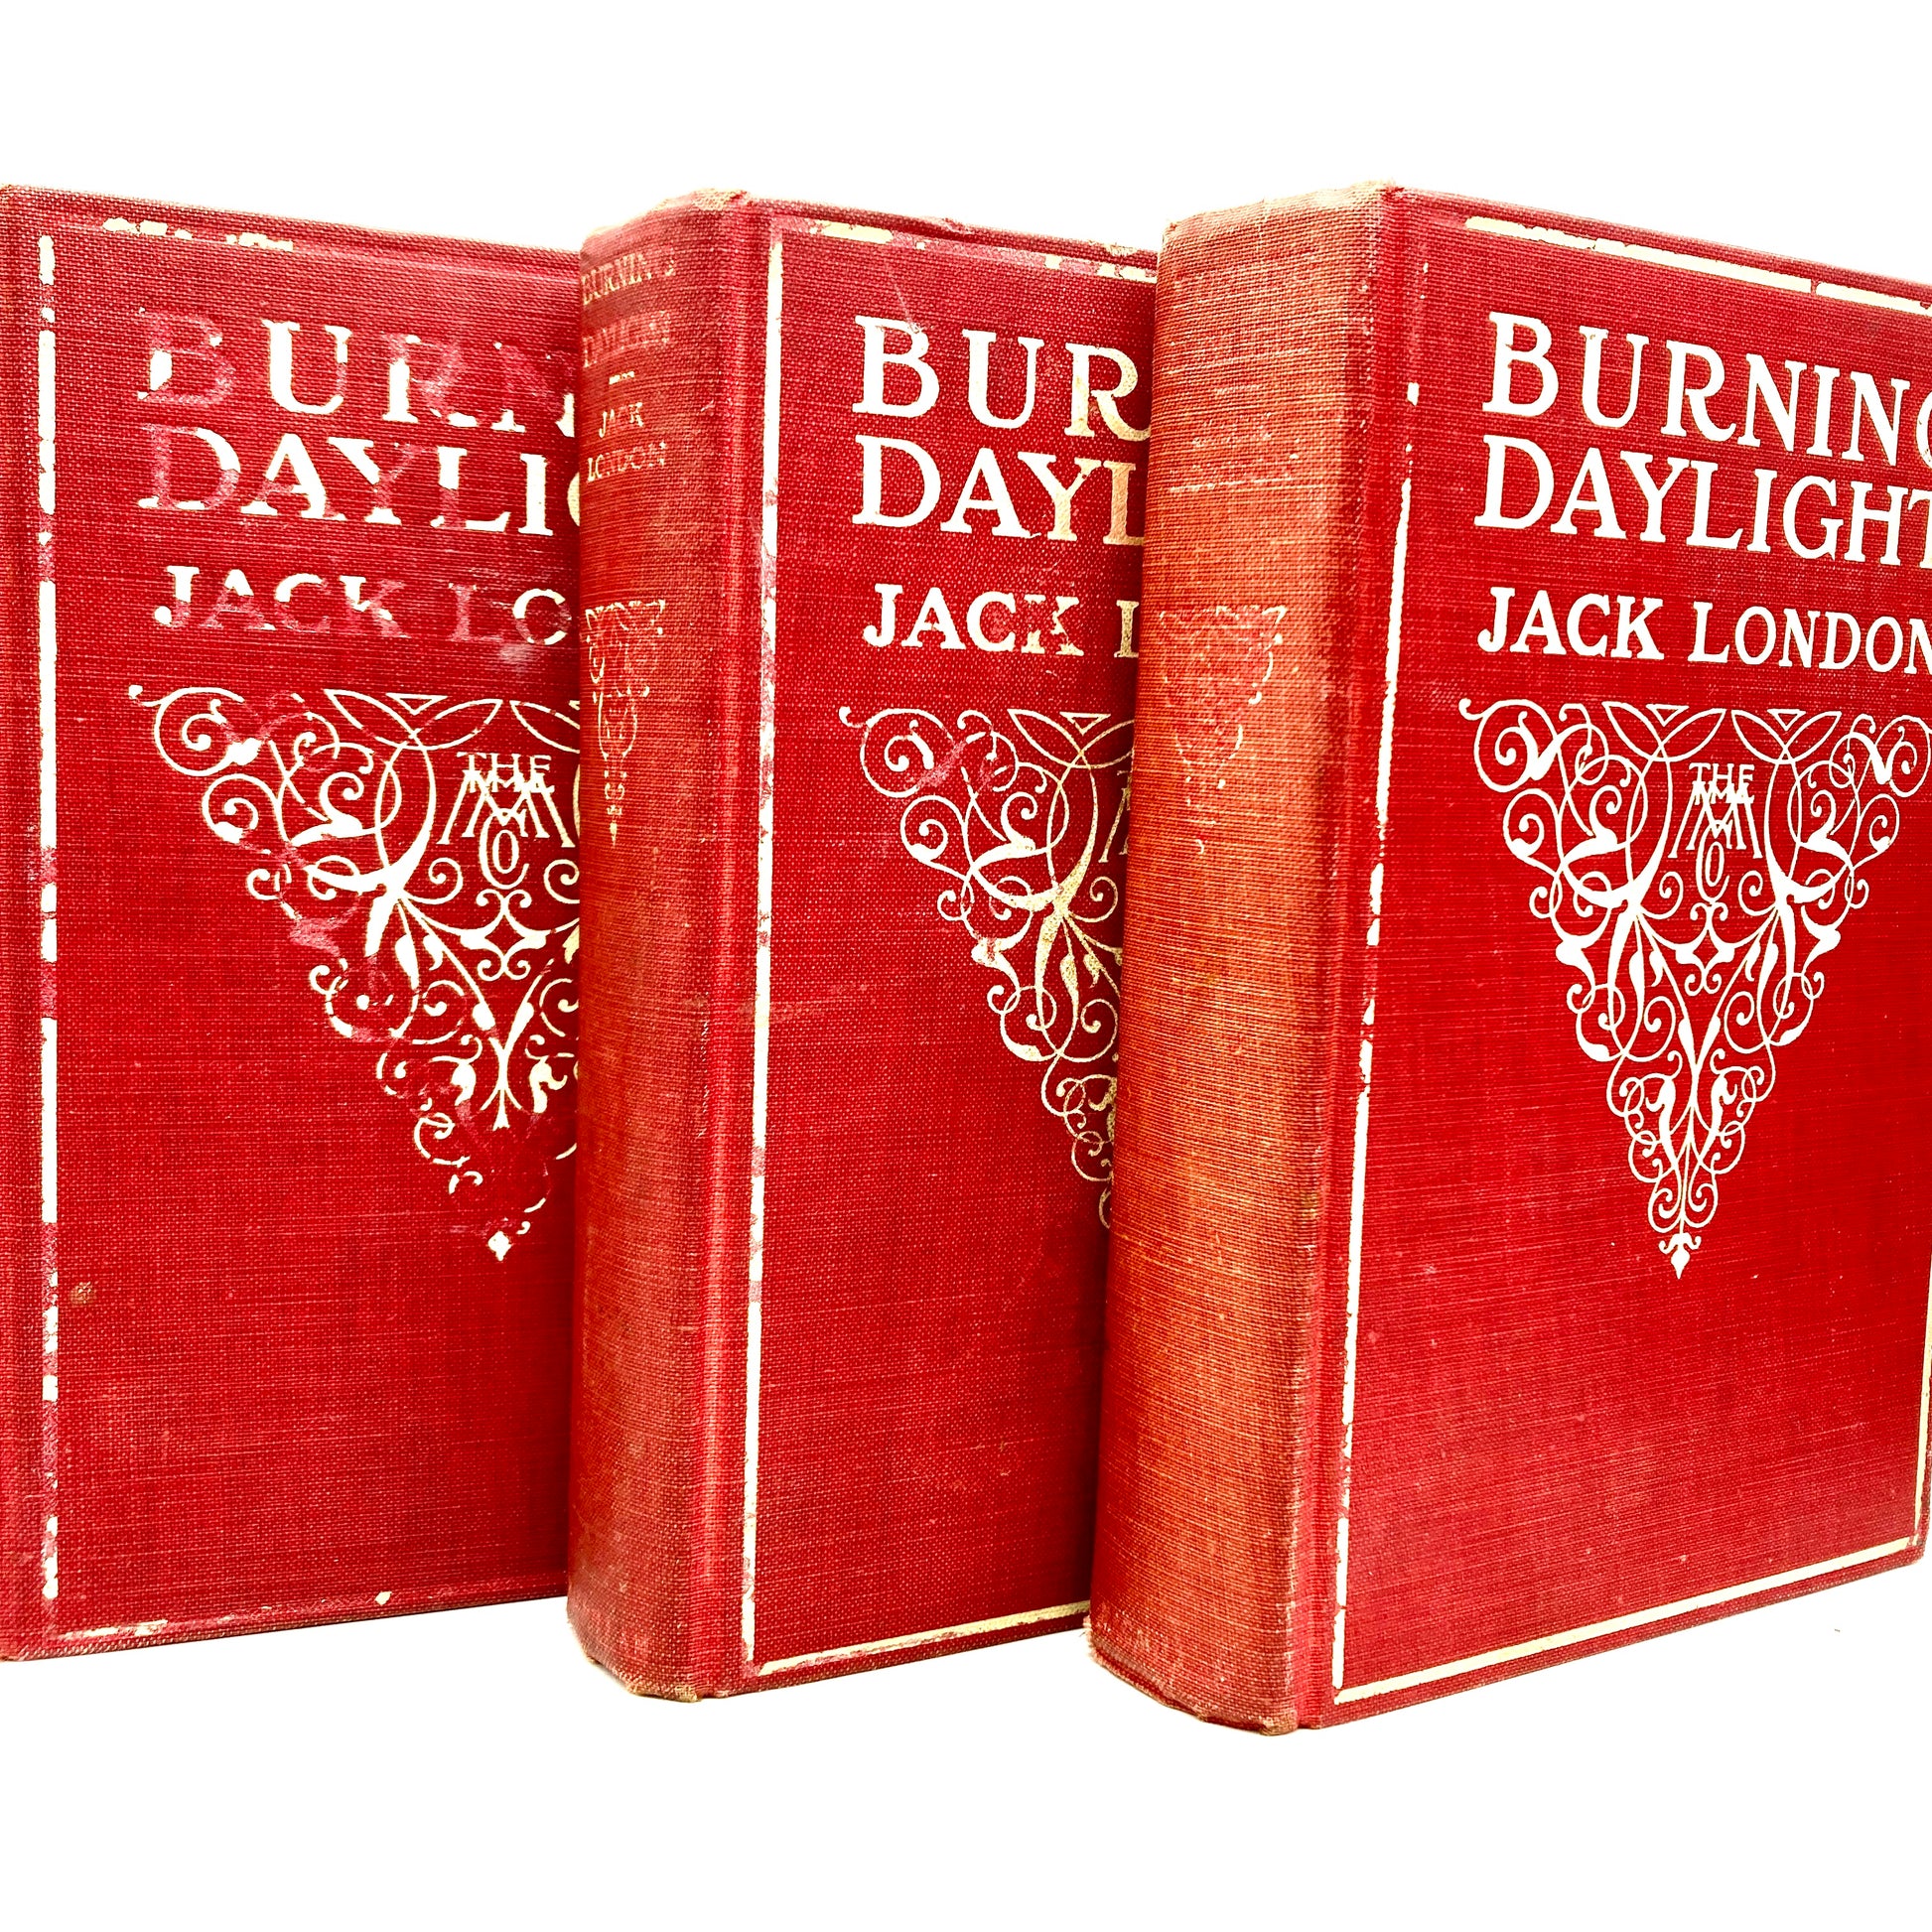 LONDON, Jack "Burning Daylight" [Macmillan, 1913] 1st/5th - Buzz Bookstore